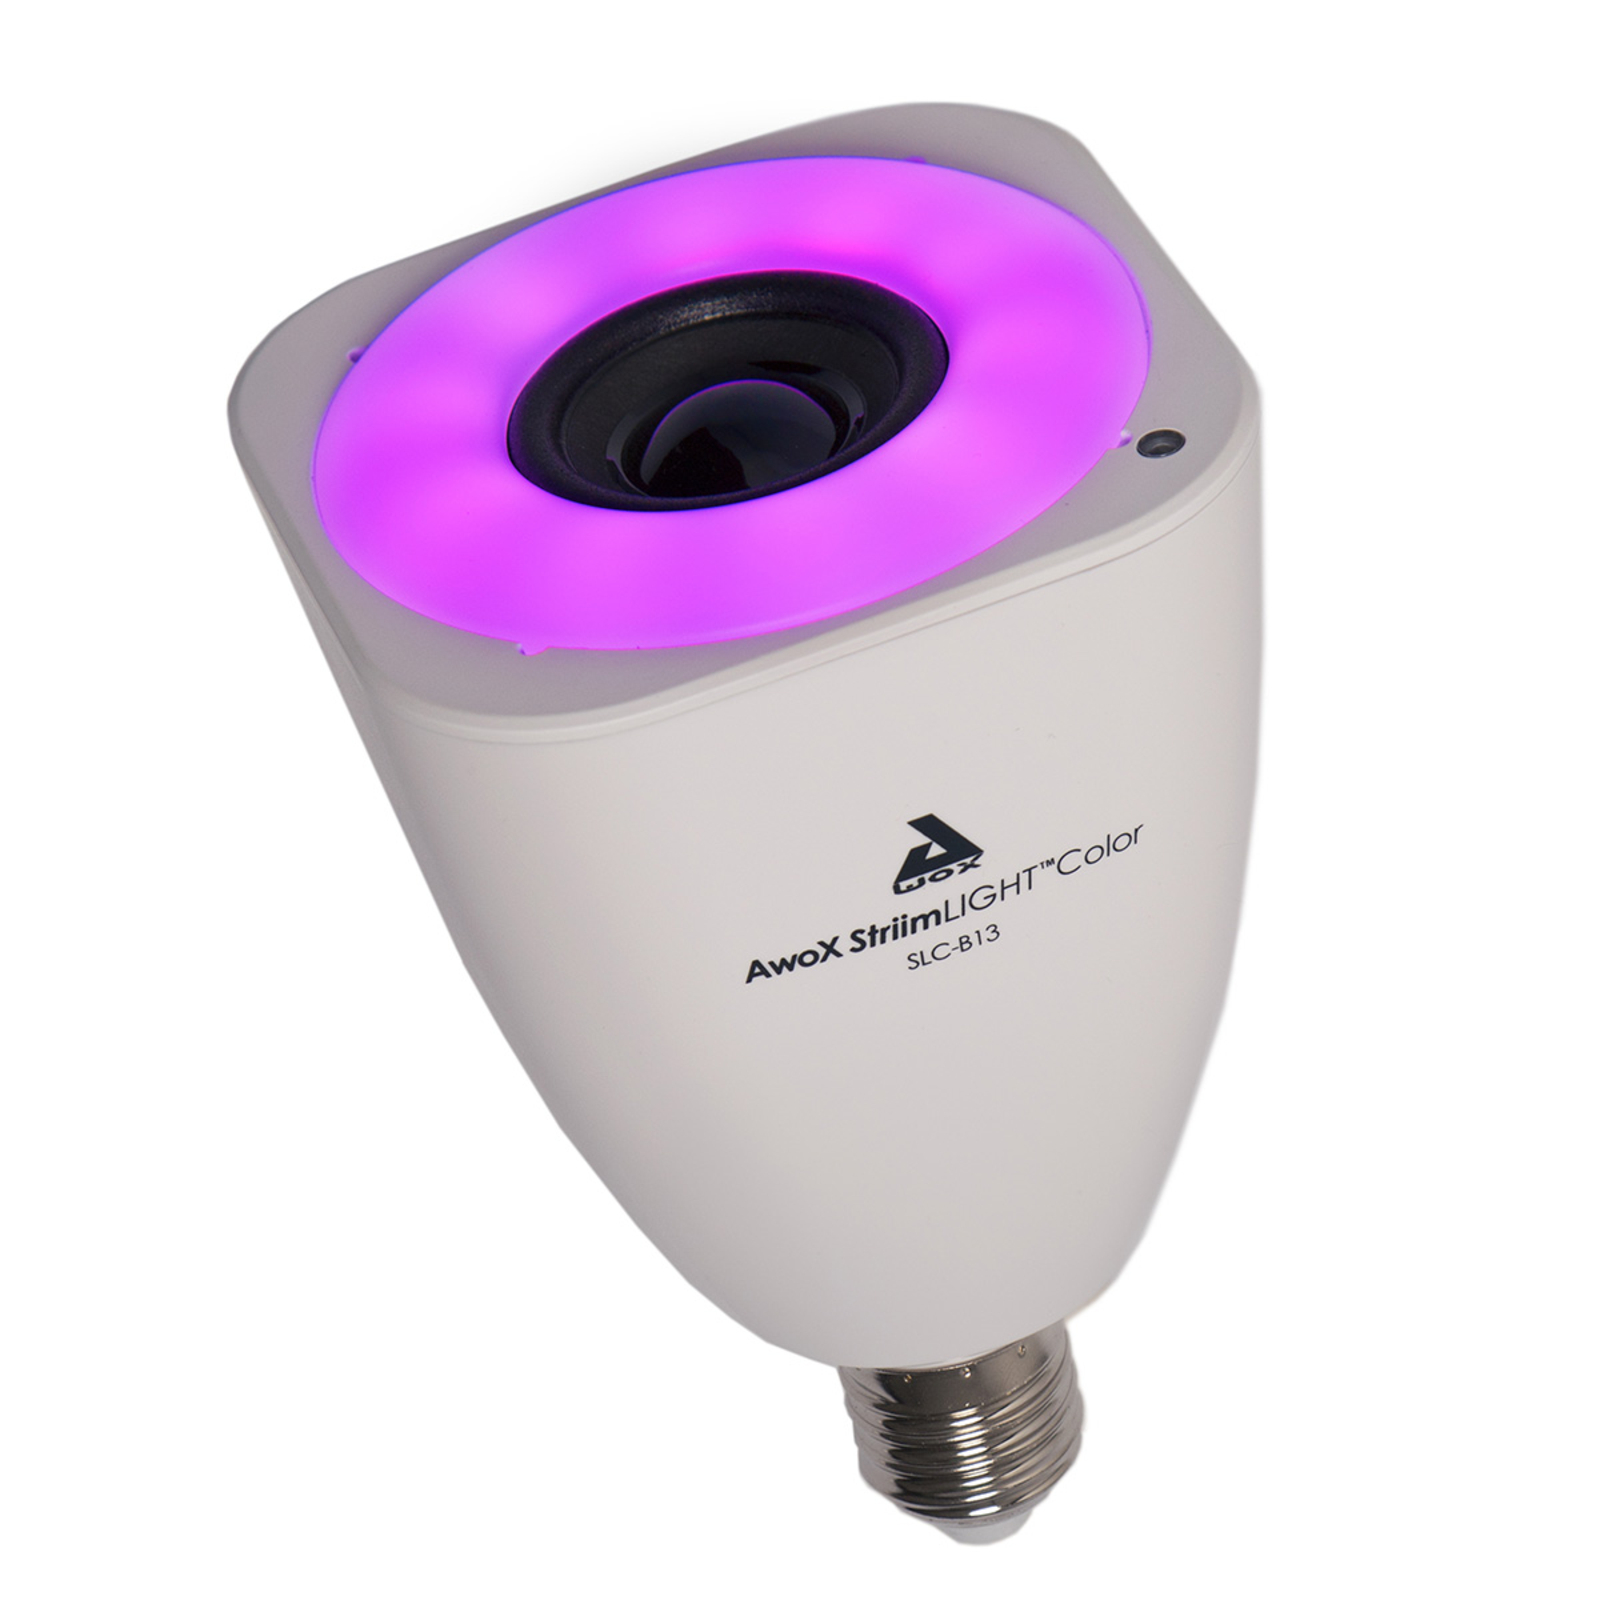 AwoX StriimLIGHT Color LED-lampa E27, Bluetooth